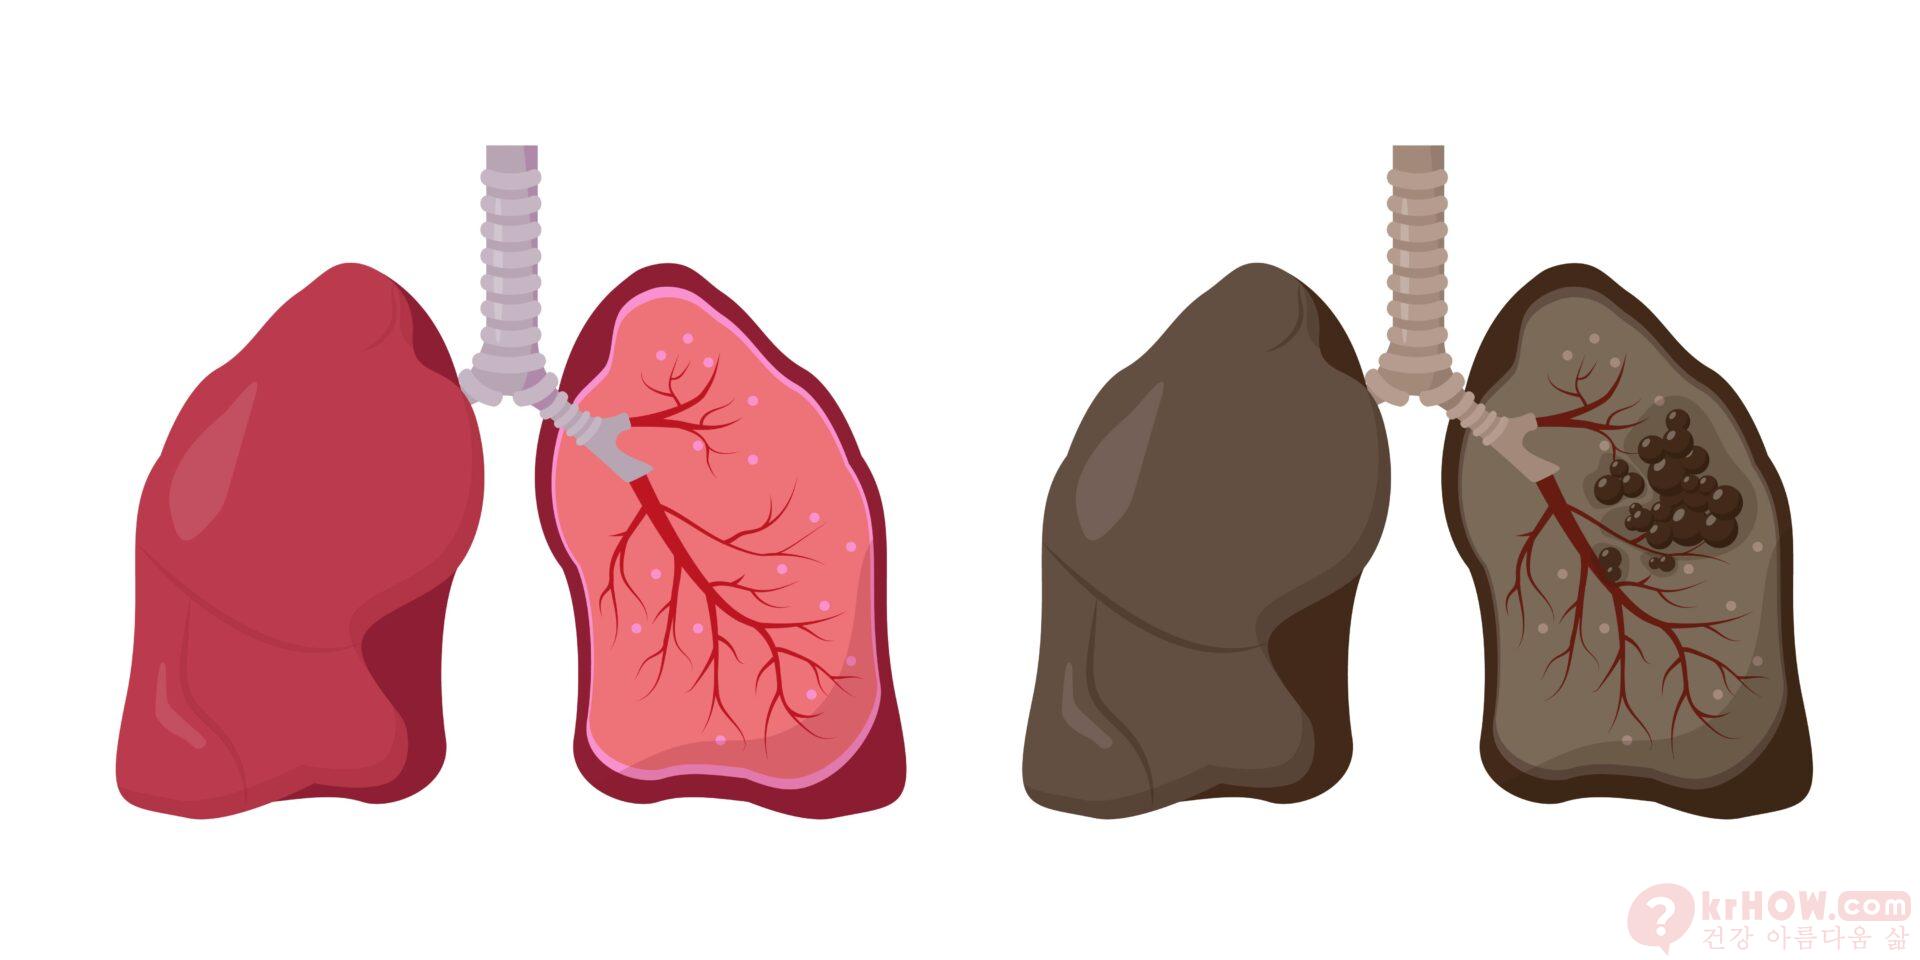 폐 낭종은 폐 조직 내에 형성되는 비정상적인 공기 또는 액체로 채워진 주머니 모양의 공간입니다.